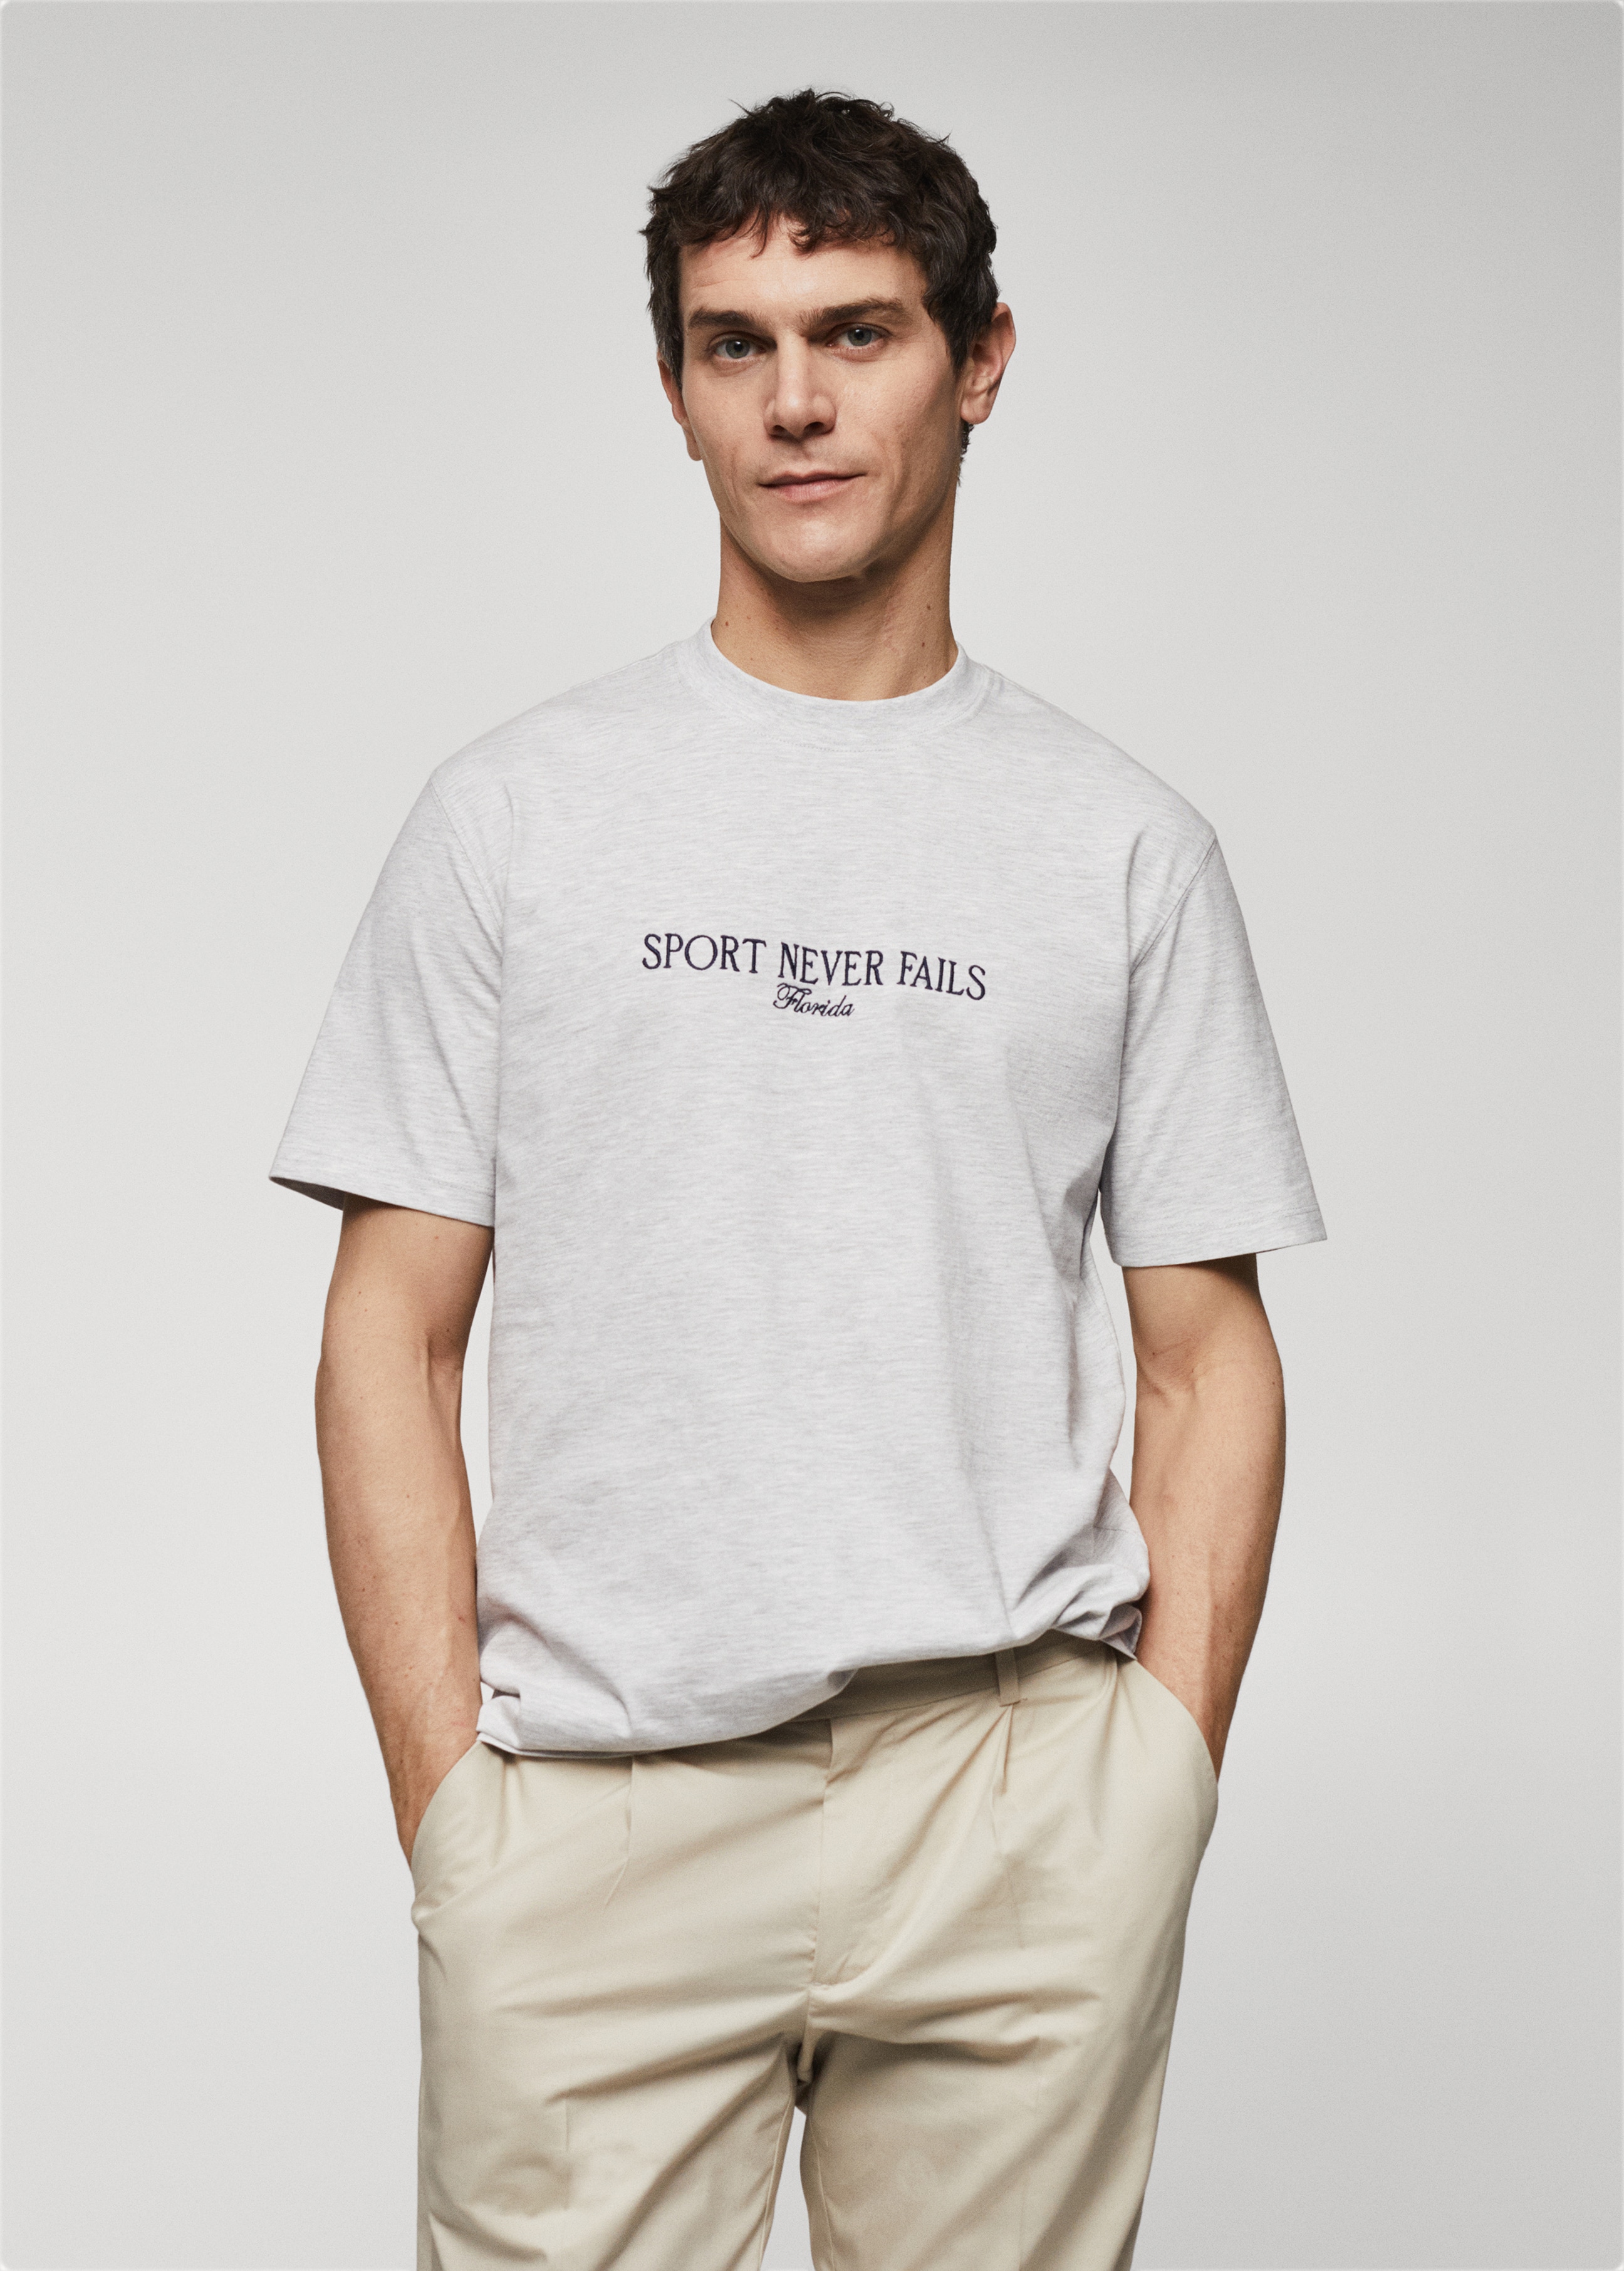 T-shirt coton message brodé - Plan moyen